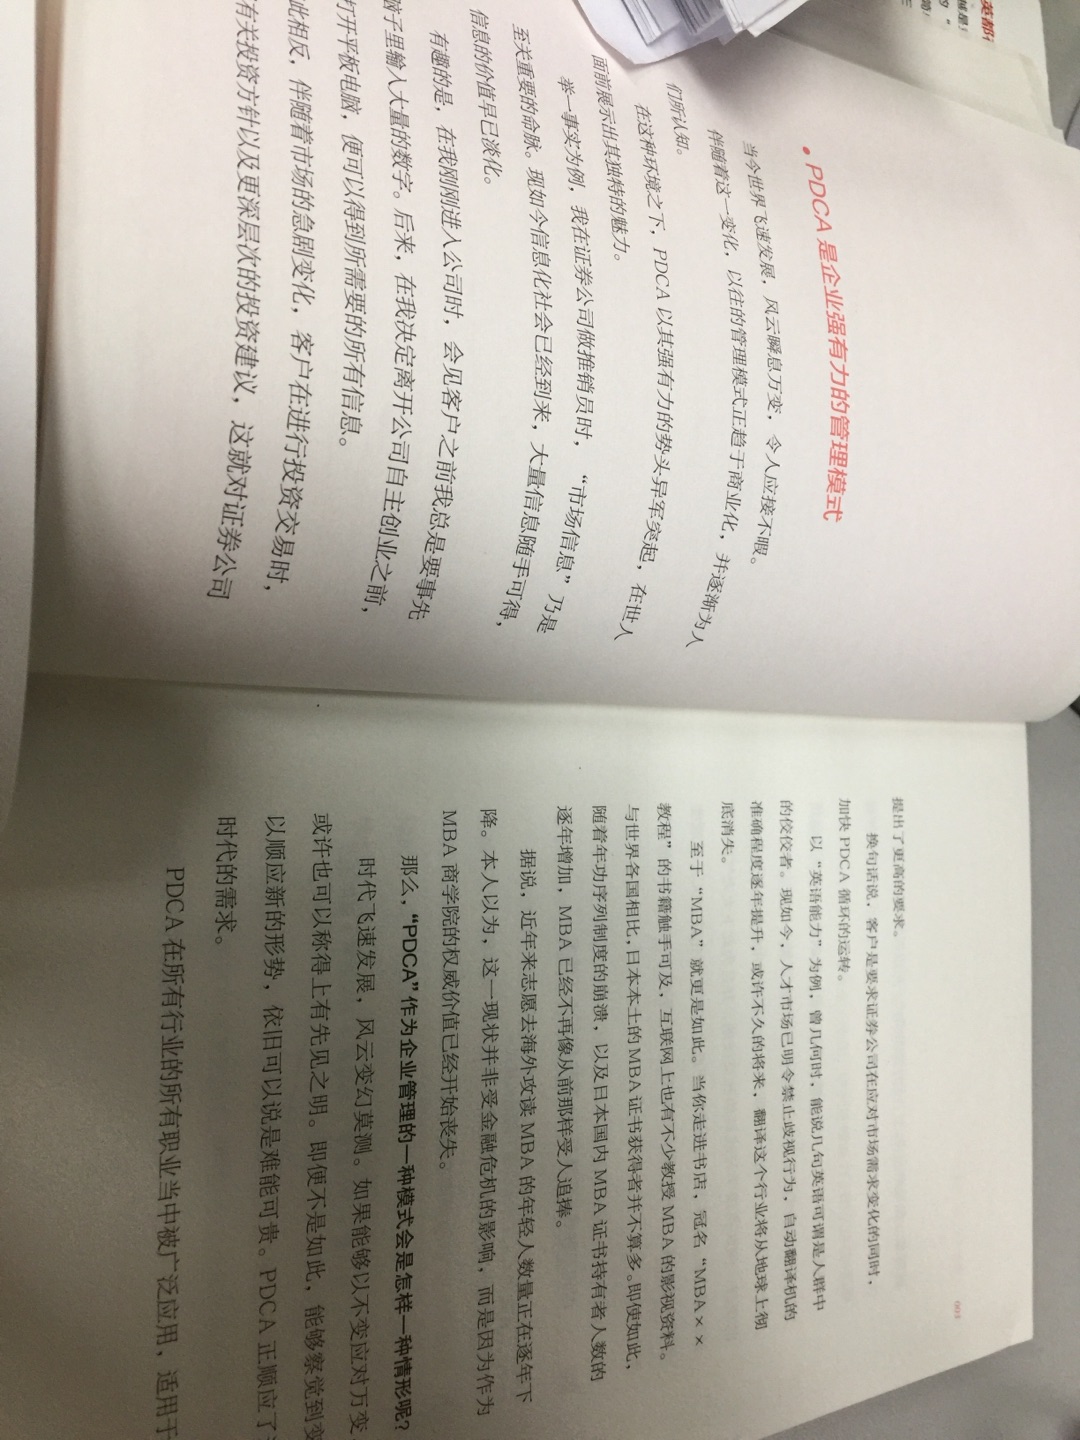 书是好书，就是翻译的确比较啰嗦。无奈再买了一本台湾版，对照着看。